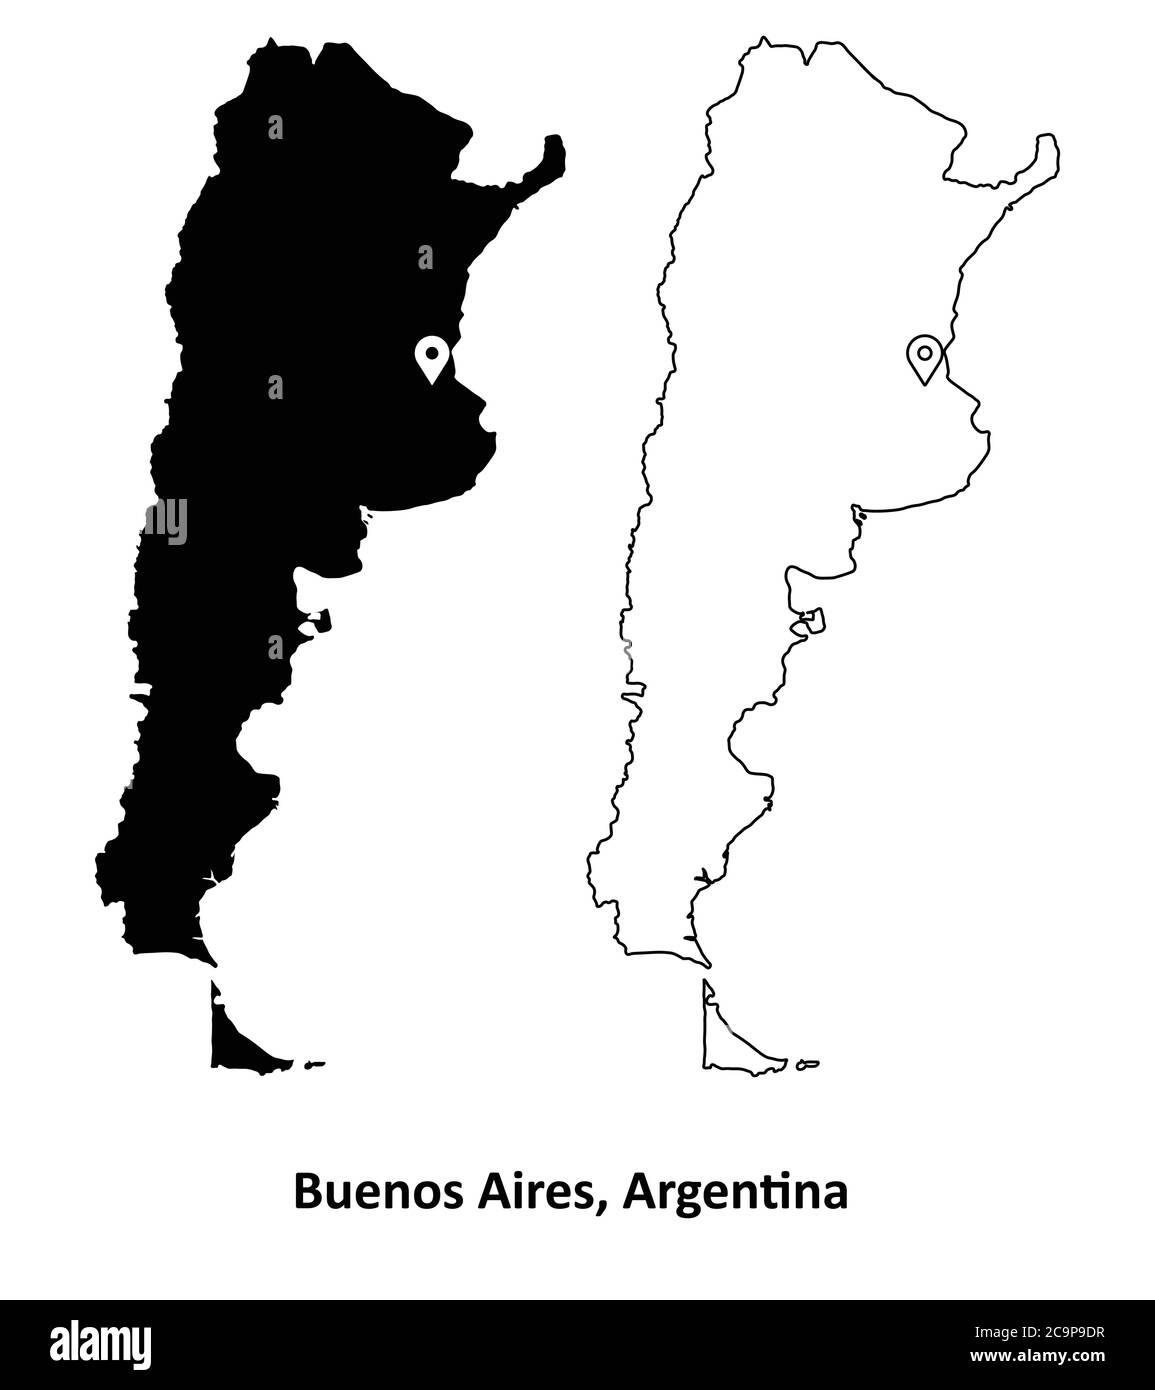 Buenos Aires Argentina. Mapa detallado del país con la ubicación de la ciudad capital PIN. Silueta negra y mapas de contorno aislados sobre fondo blanco EPS Vector Ilustración del Vector